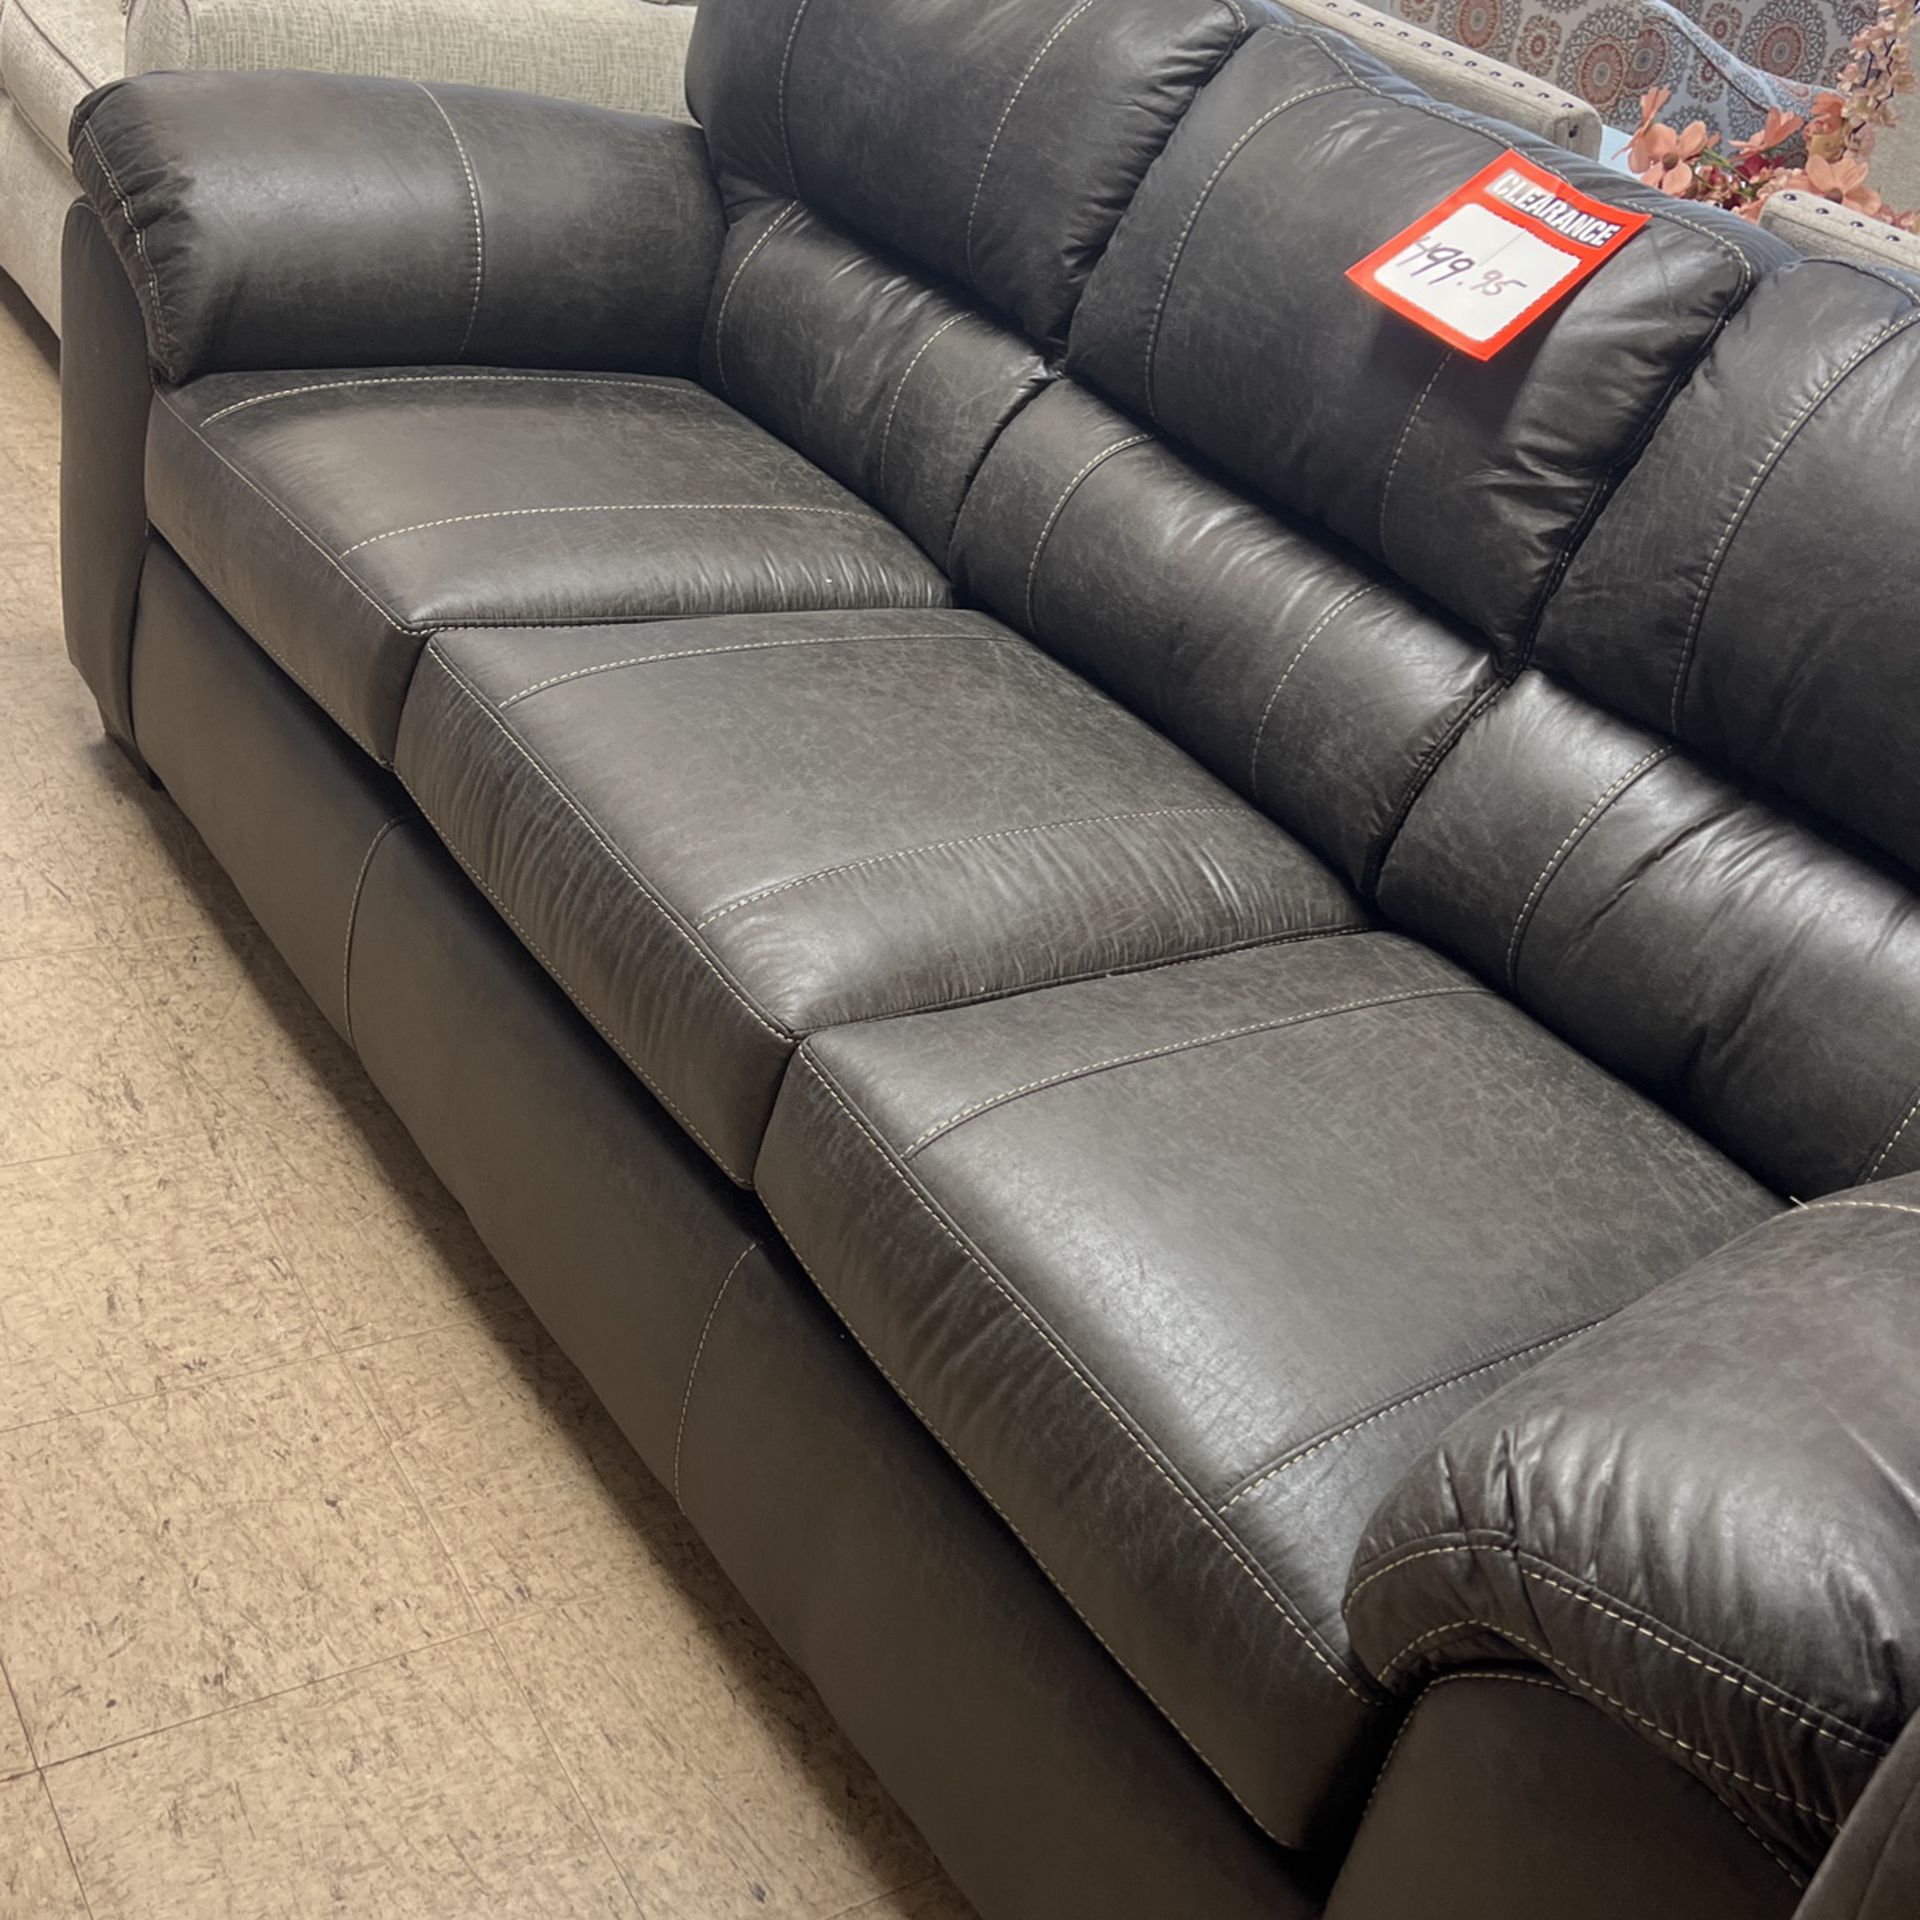 Brand new sofa loveseat for $1200